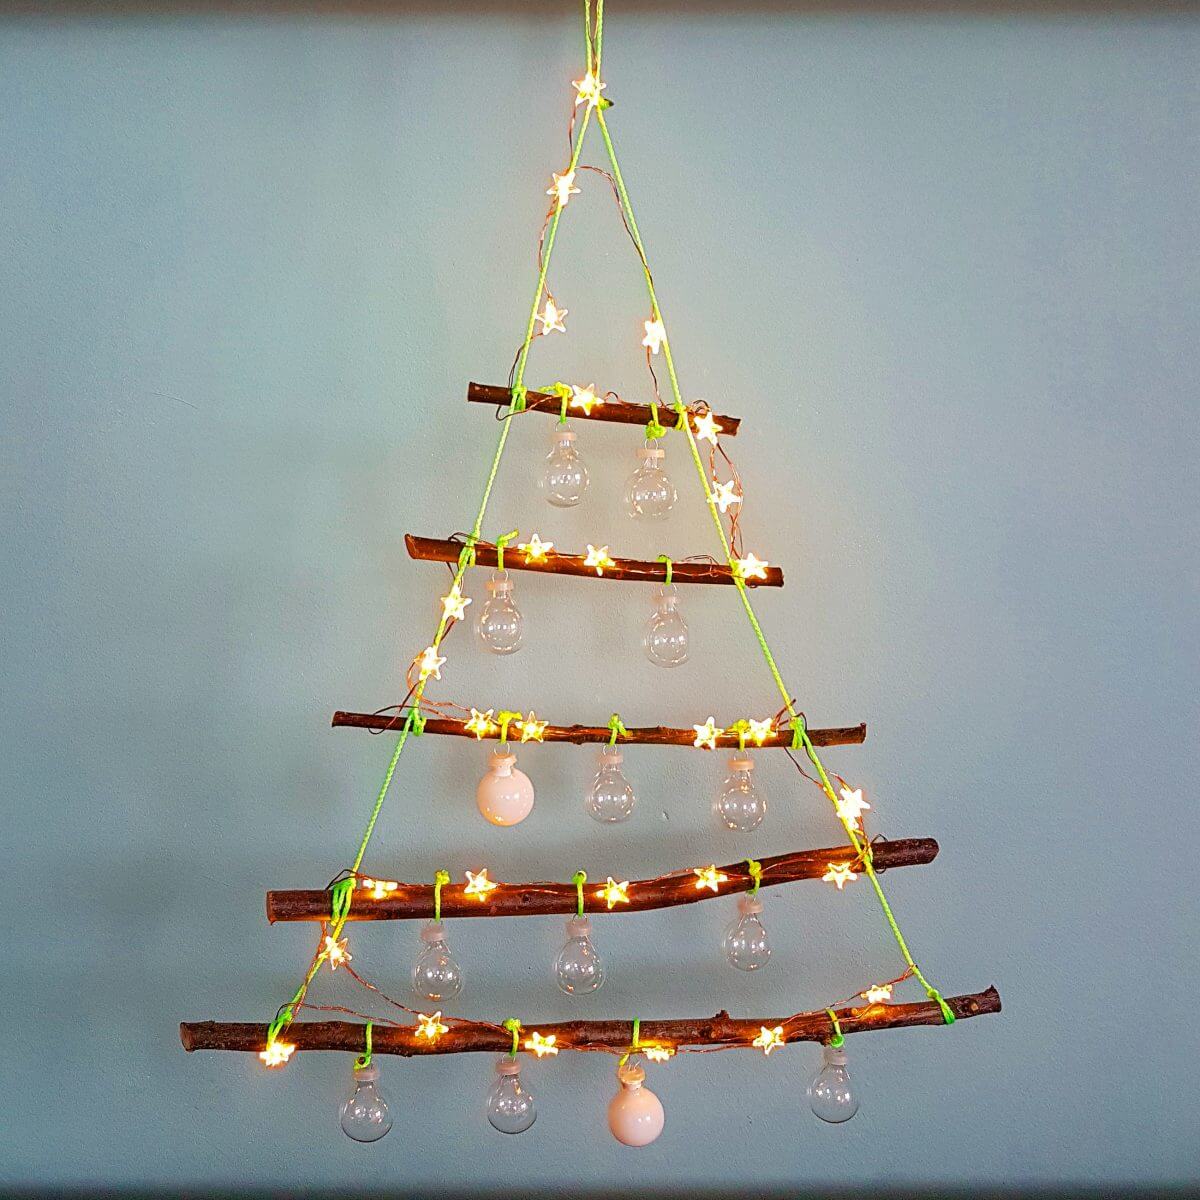 Kerst DIY: alternatieve kerstboom met lichtjes maken van takken